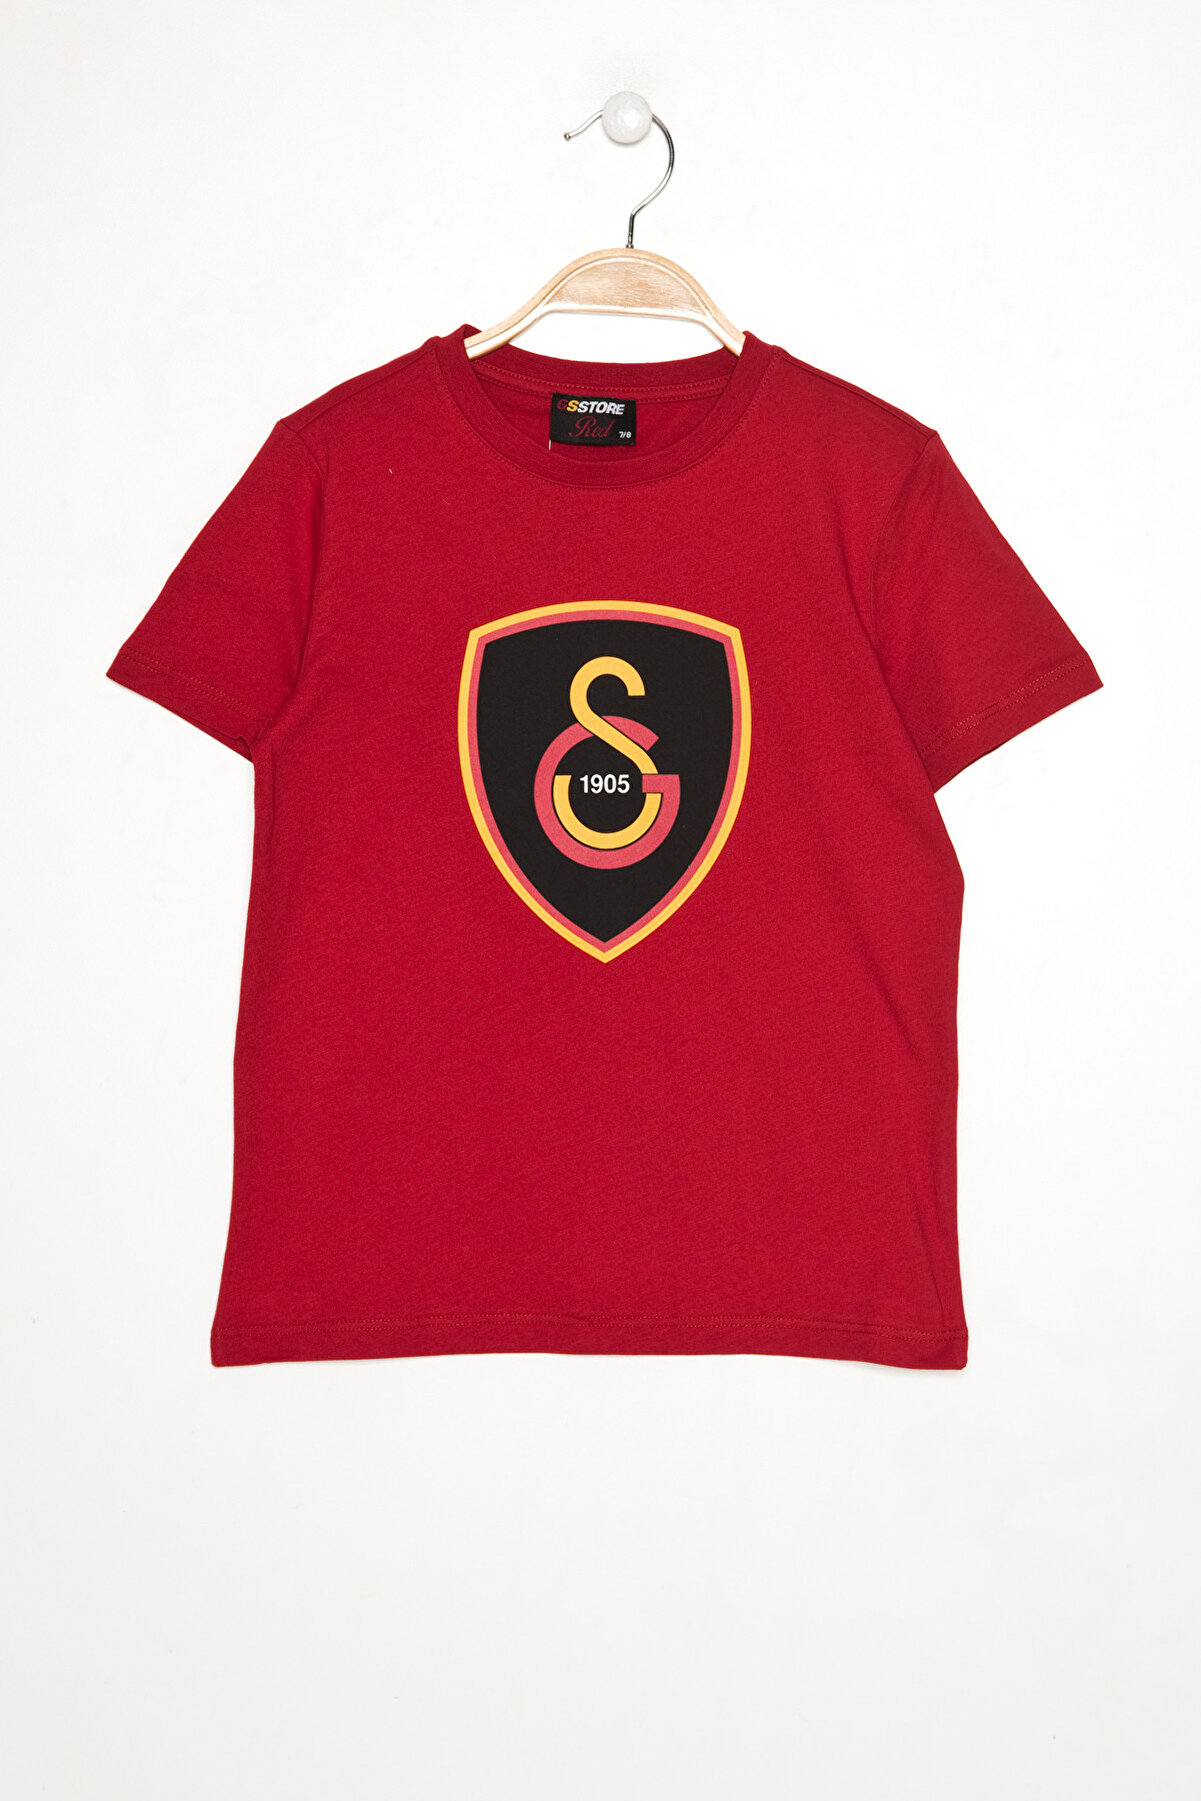 Galatasaray Galatasaray Kırmızı Melanj Çocuk T-Shirt K023-C85688